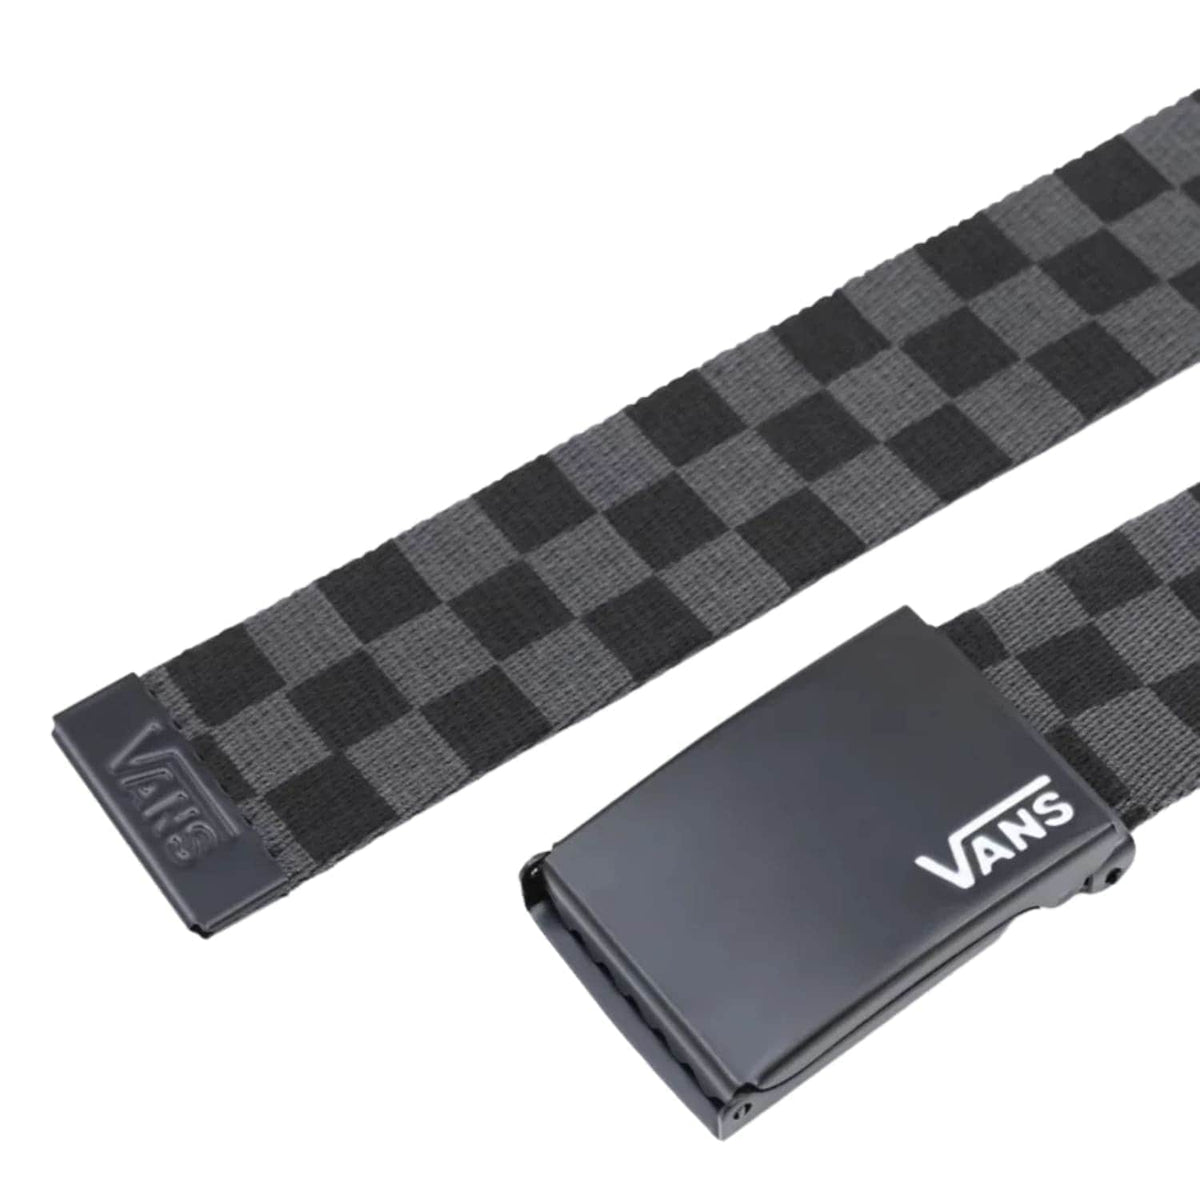 Vans Deppster II Web Belt - Black/Grey - Mens Web Belt by Vans One Size